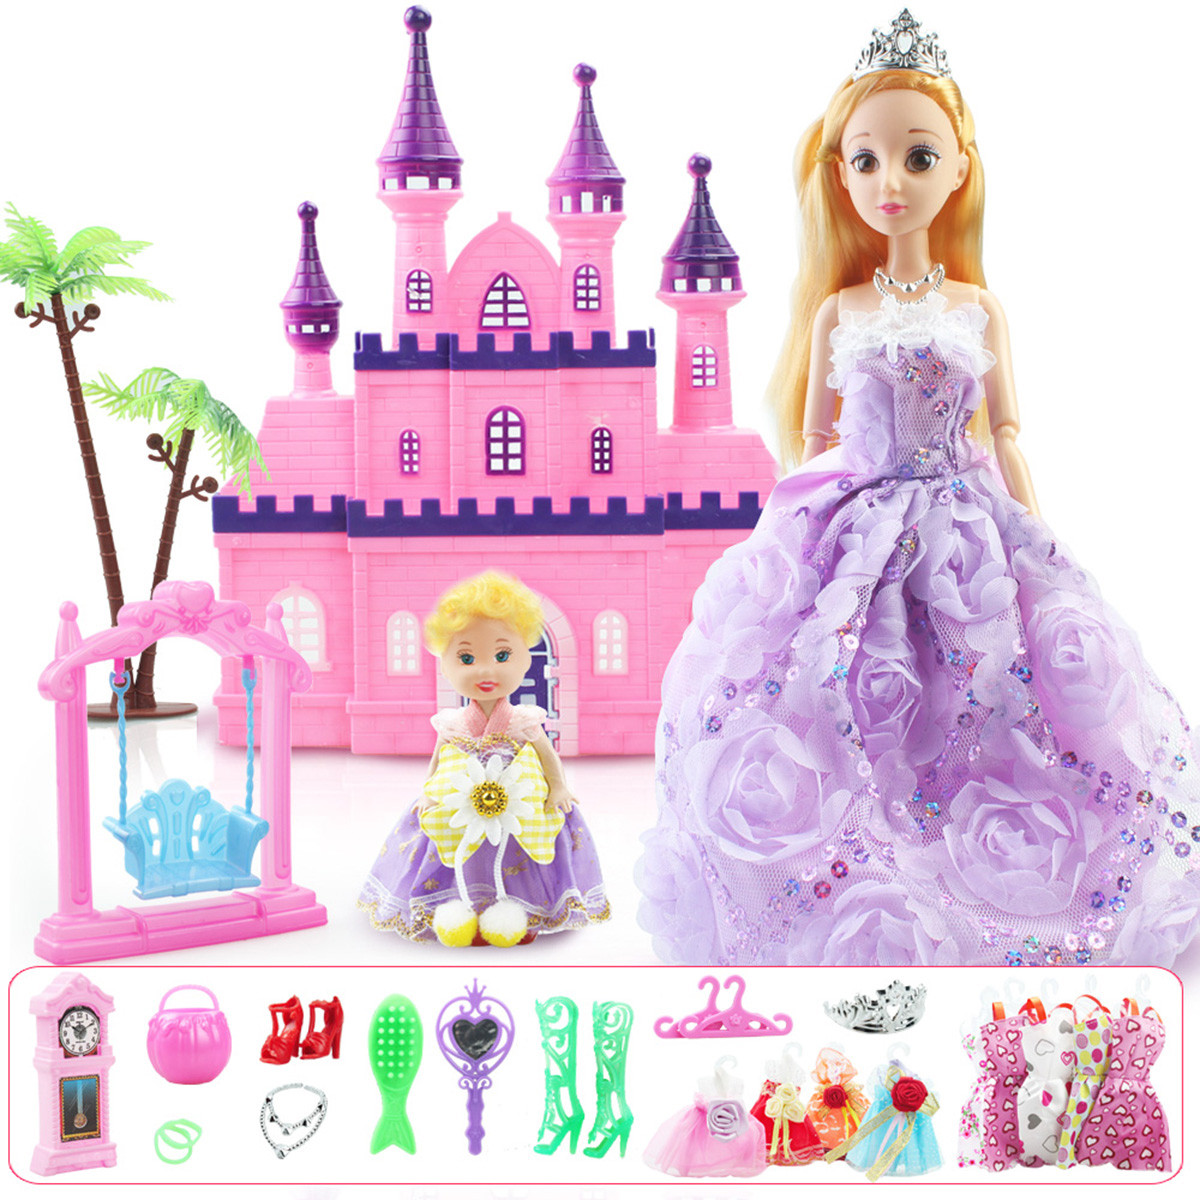 Barbie as Rapunzel/Gallery | Barbie Movies Wiki | Fandom powered by Wikia